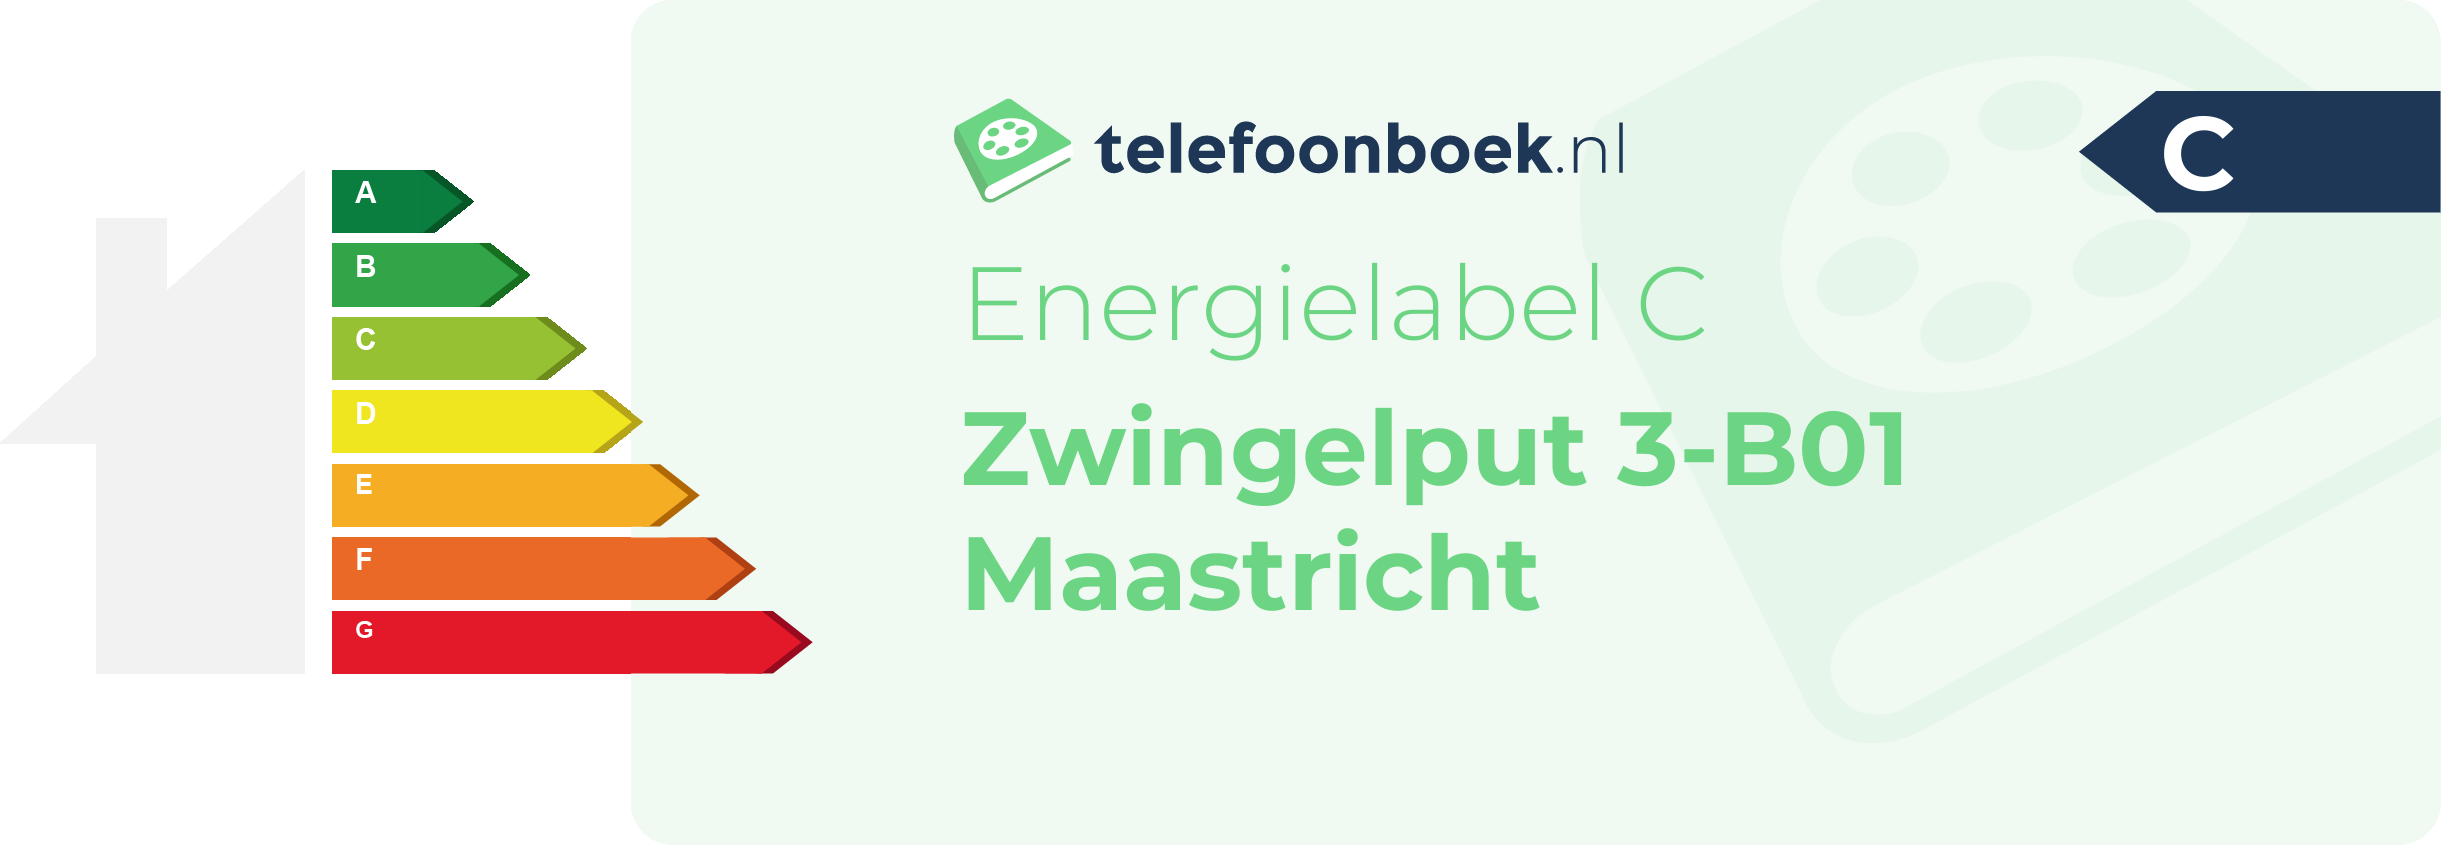 Energielabel Zwingelput 3-B01 Maastricht